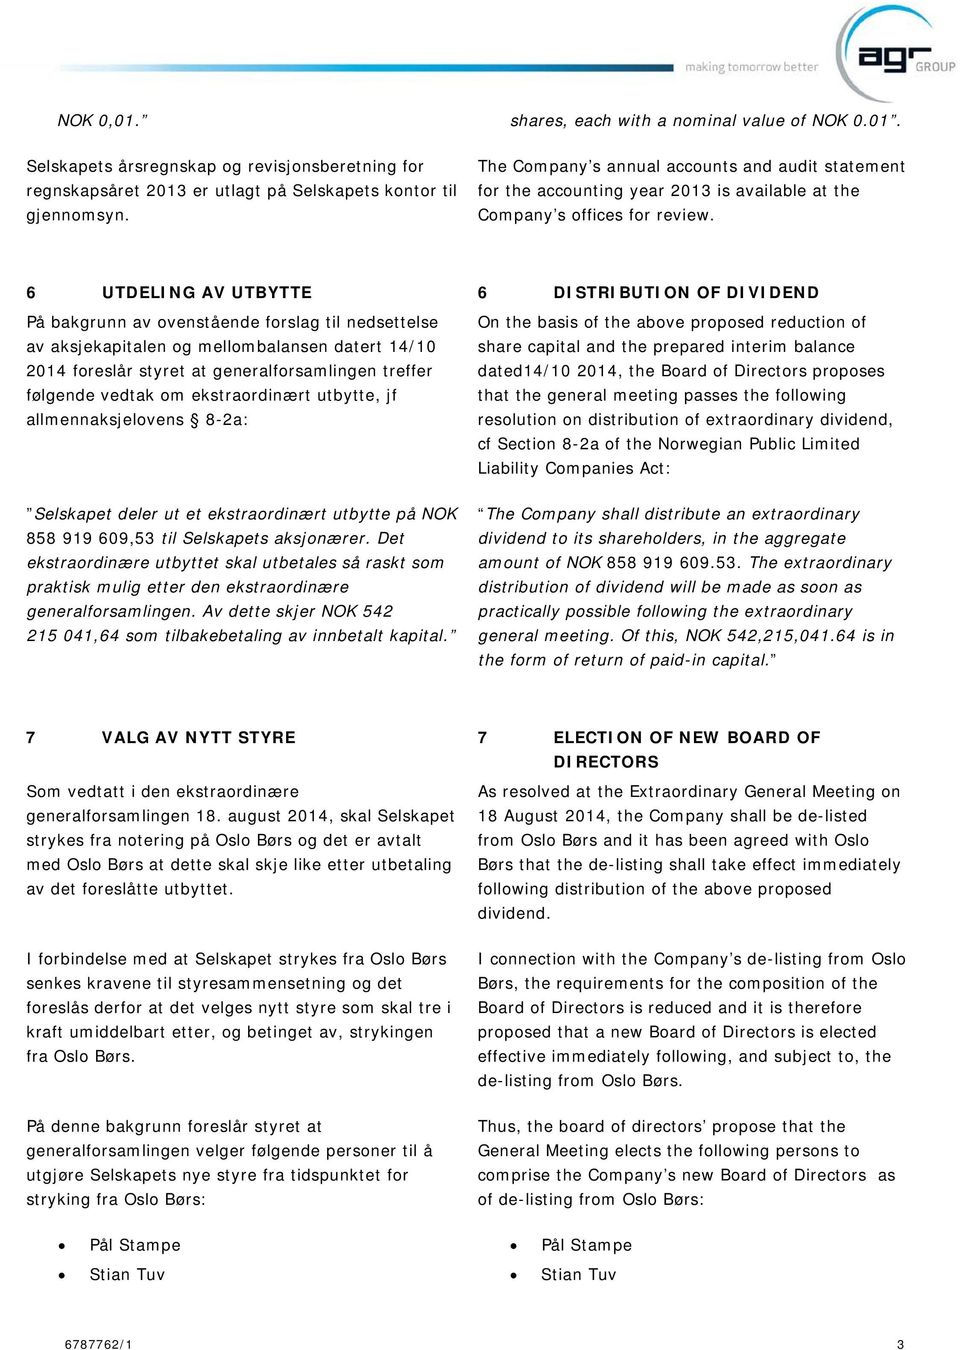 6 UTDELING AV UTBYTTE 6 DISTRIBUTION OF DIVIDEND På bakgrunn av ovenstående forslag til nedsettelse av aksjekapitalen og mellombalansen datert 14/10 2014 foreslår styret at generalforsamlingen